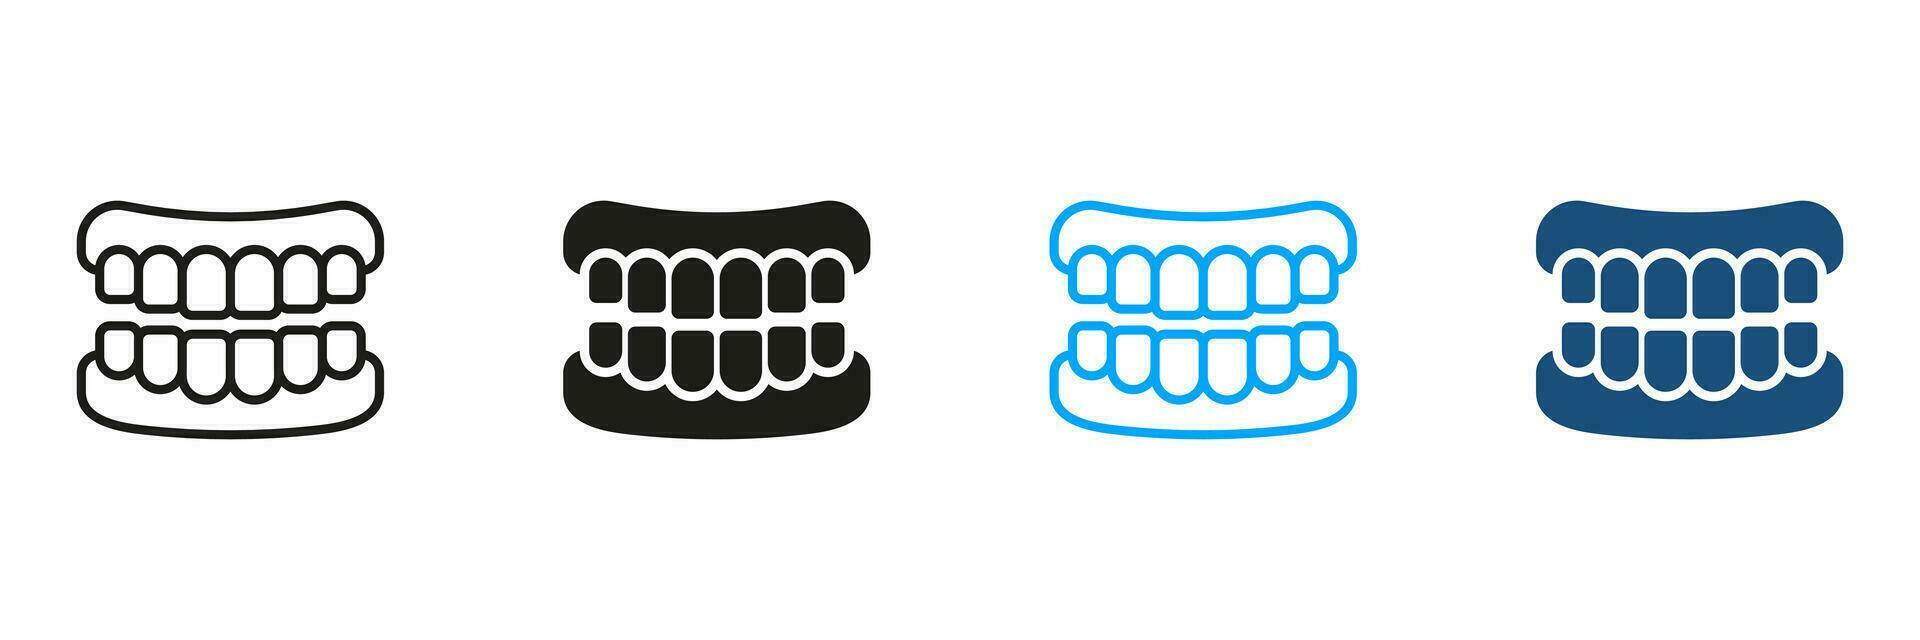 false tand, tanden prothese pictogram. menselijk kaak anatomie met tanden silhouet en lijn pictogrammen set. gezond glimlach, mondeling hygiëne, tandheelkundig behandeling, tandheelkunde teken. geïsoleerd vector illustratie.